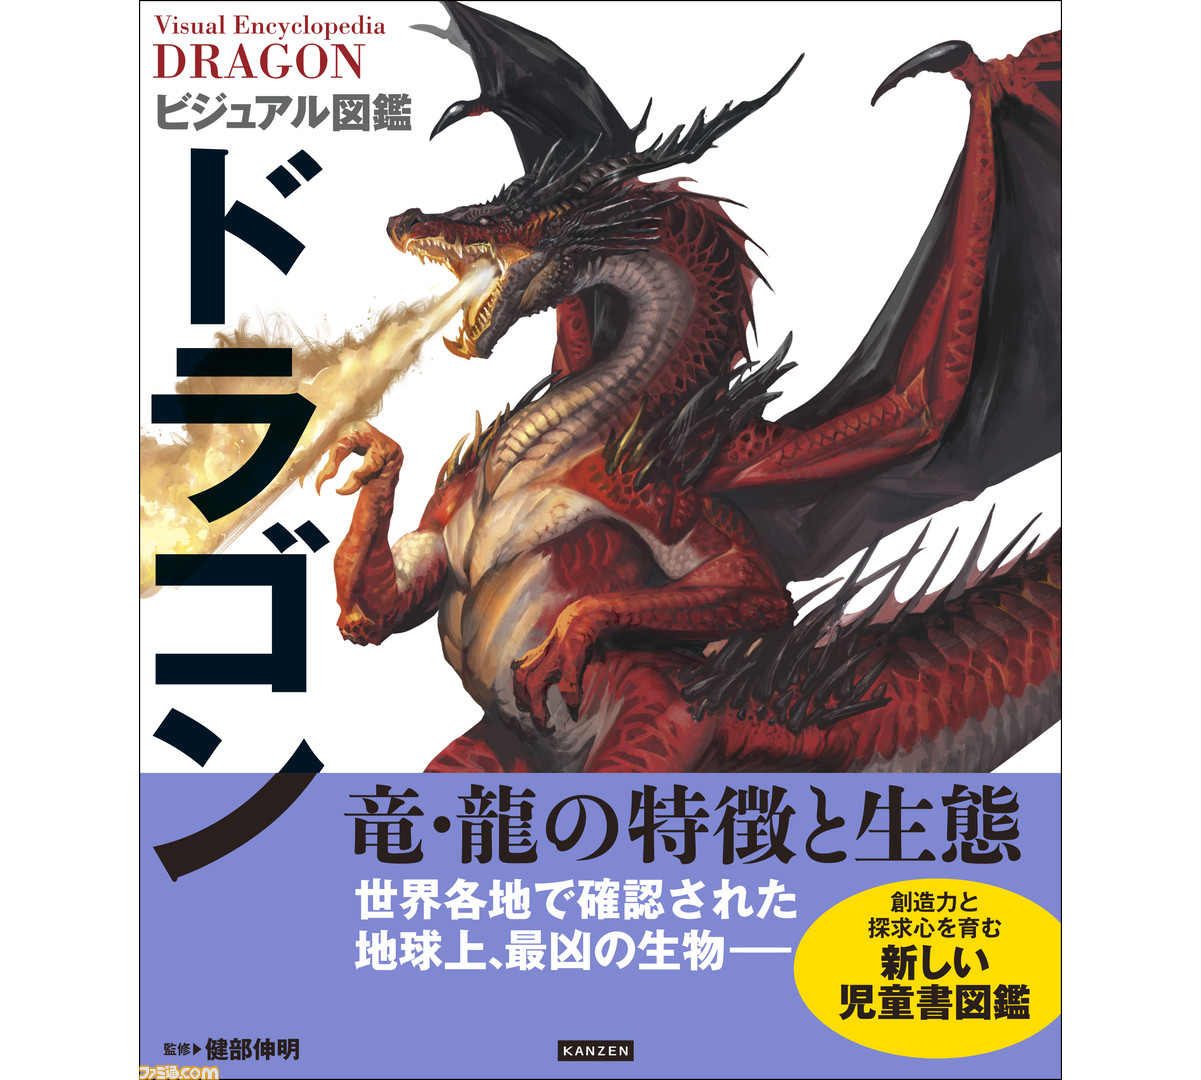 ドラゴンの真相に迫る『ビジュアル図鑑 ドラゴン』が1月16日発売